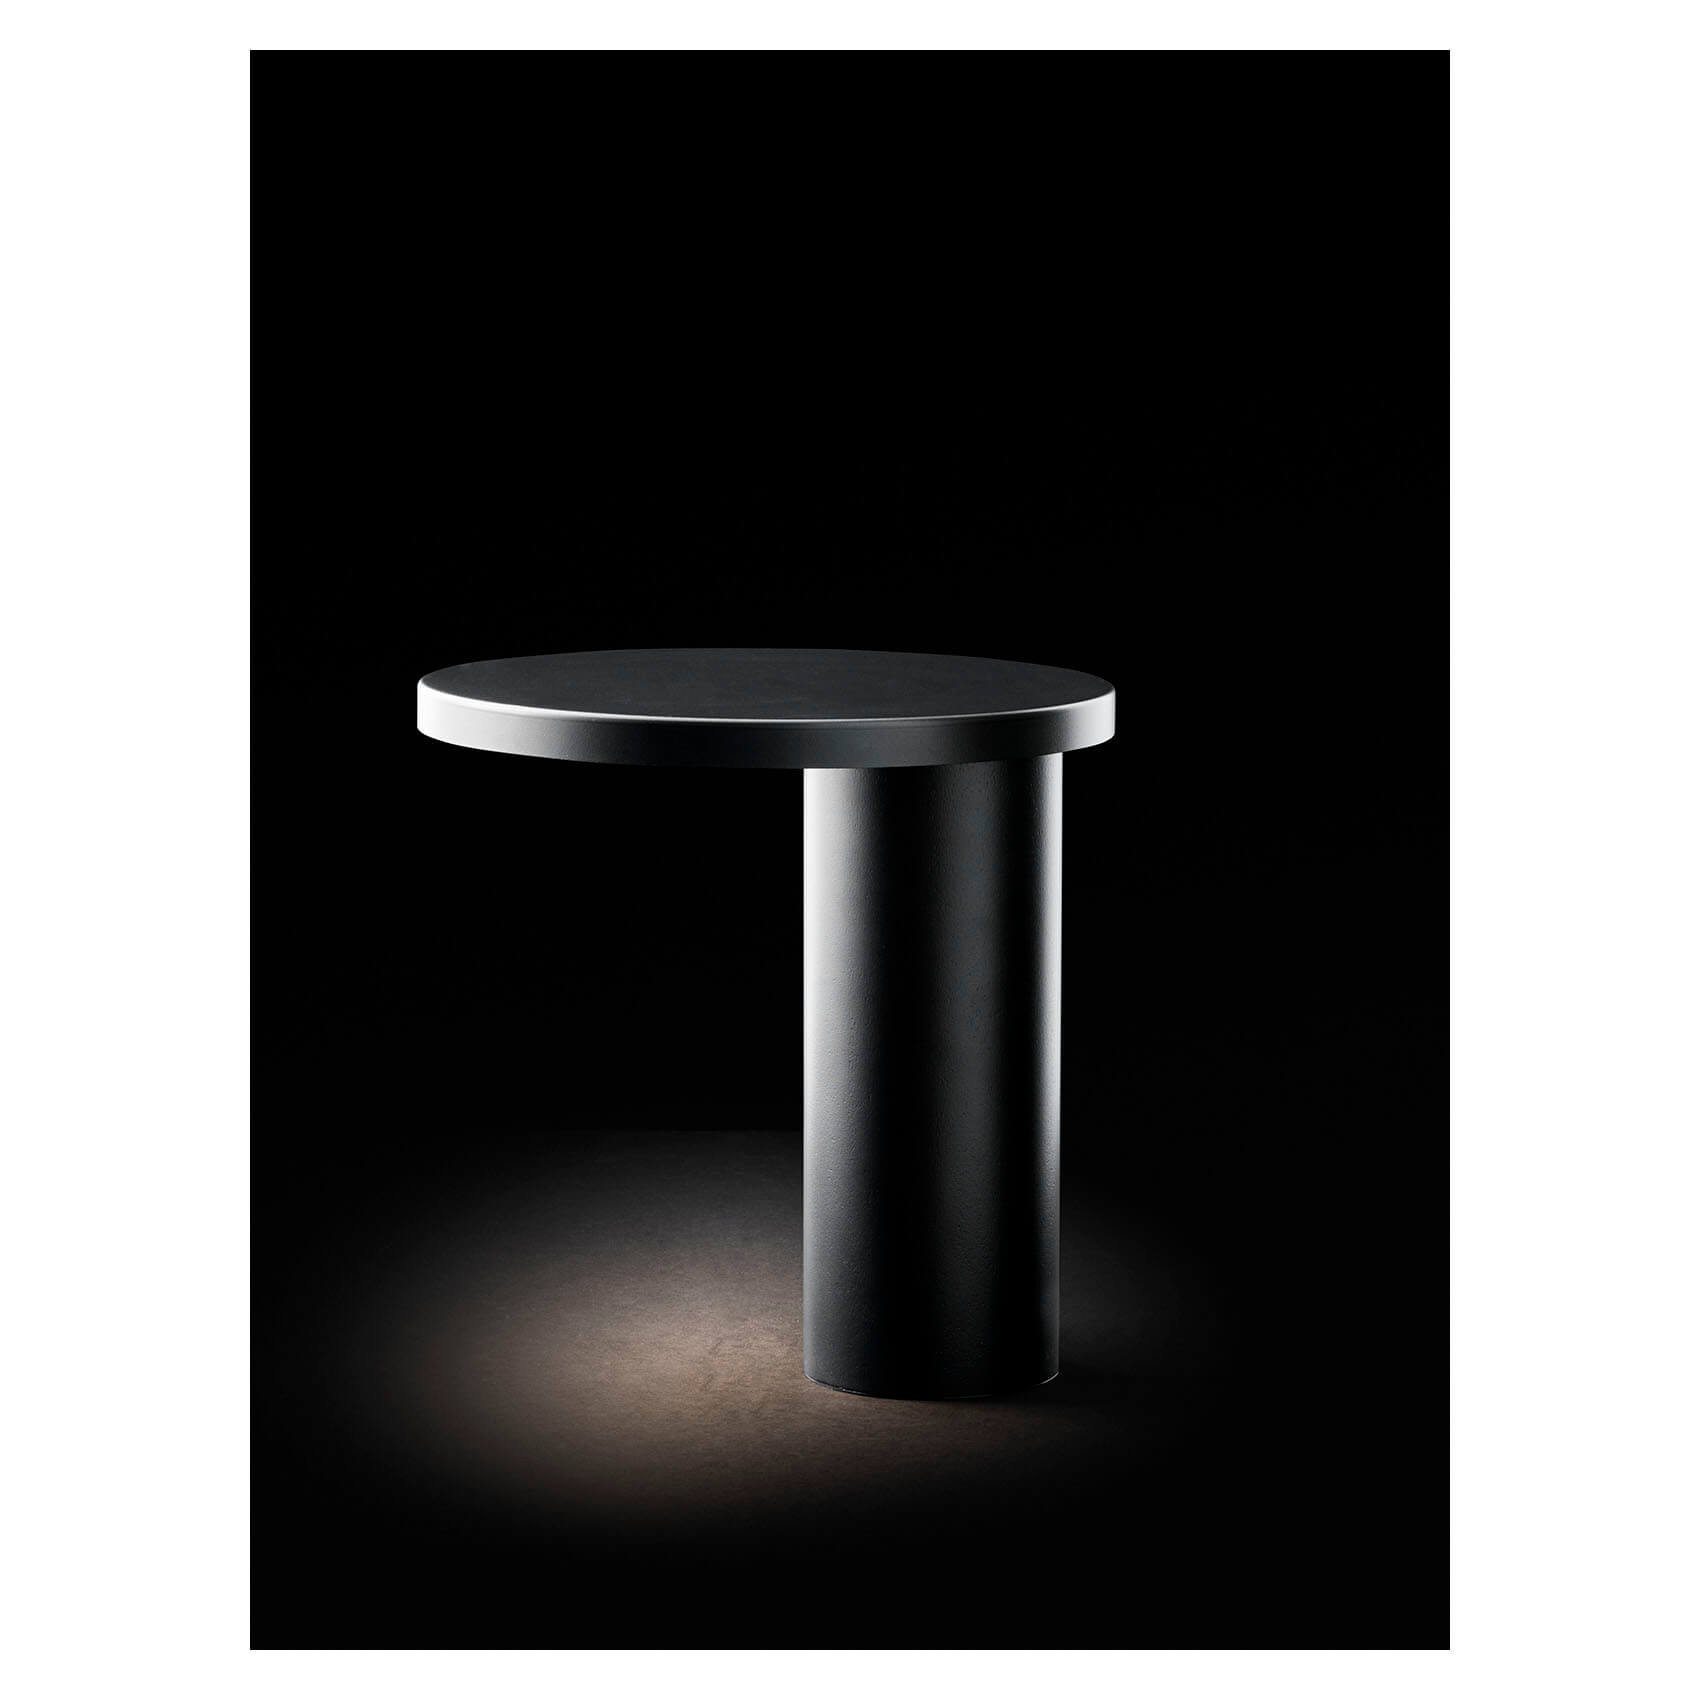 Oluce - Cylinda - table lamp - Design Angeletti&Ruzza.jpg